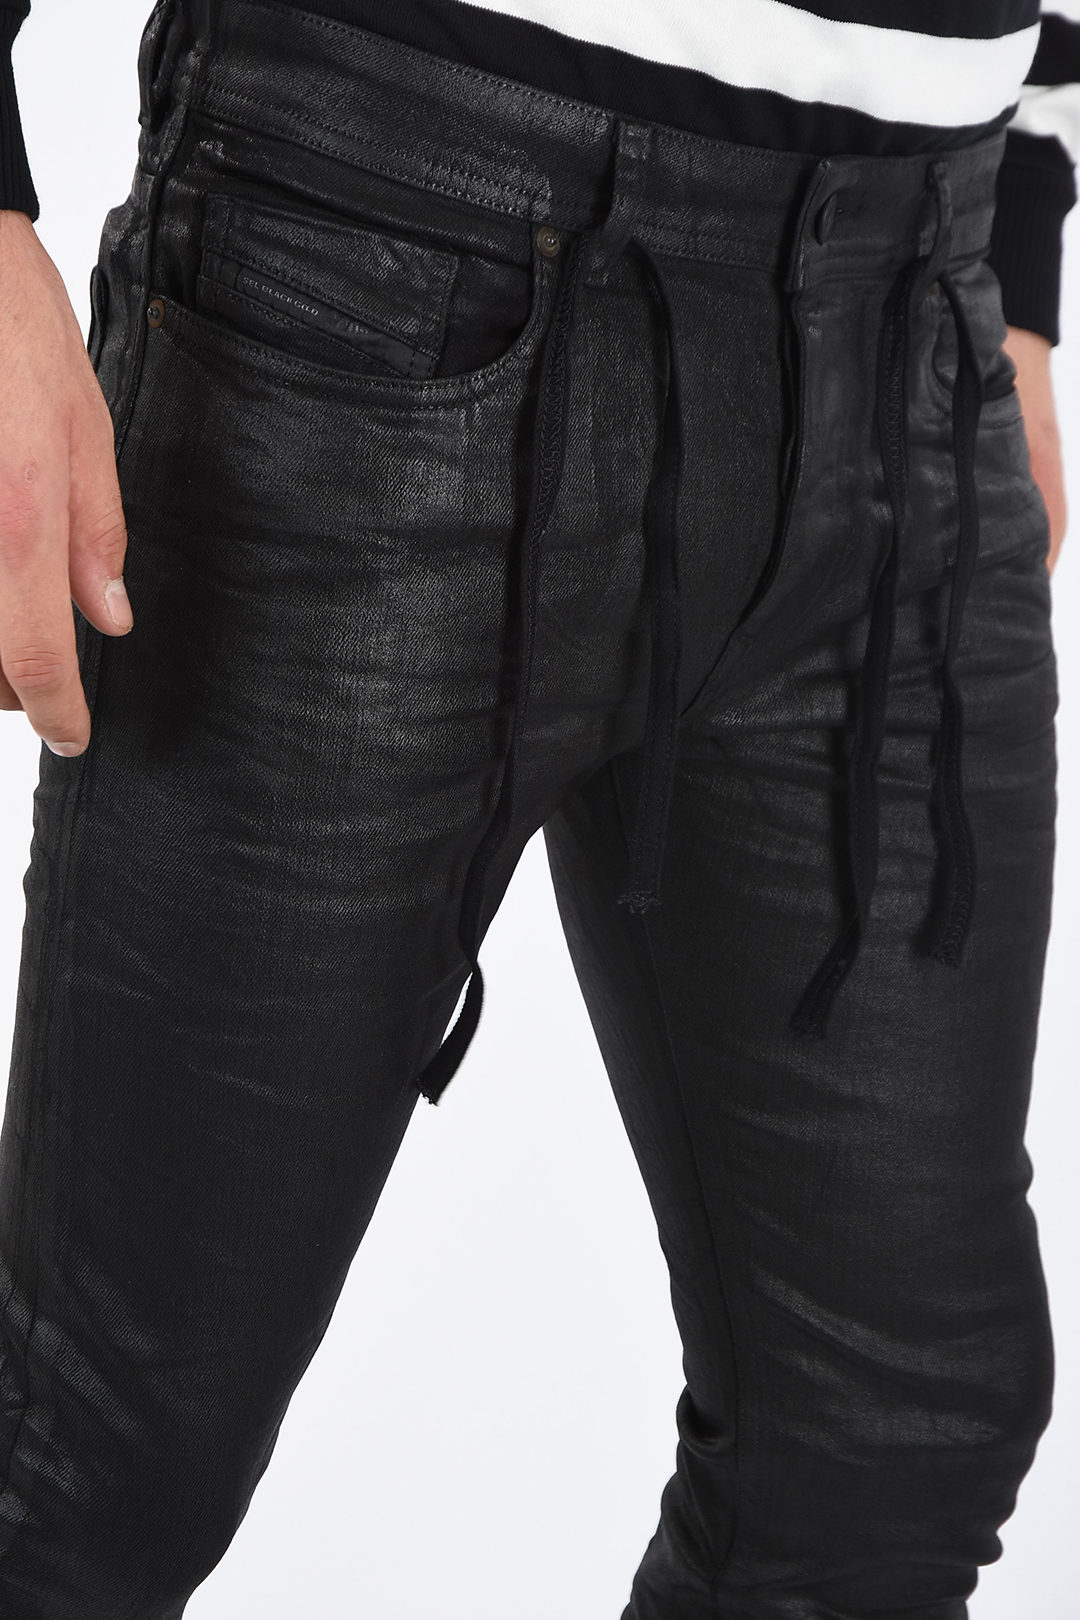 Diesel BLACK GOLD 15cm Waxed Denim Jeans men - Glamood Outlet